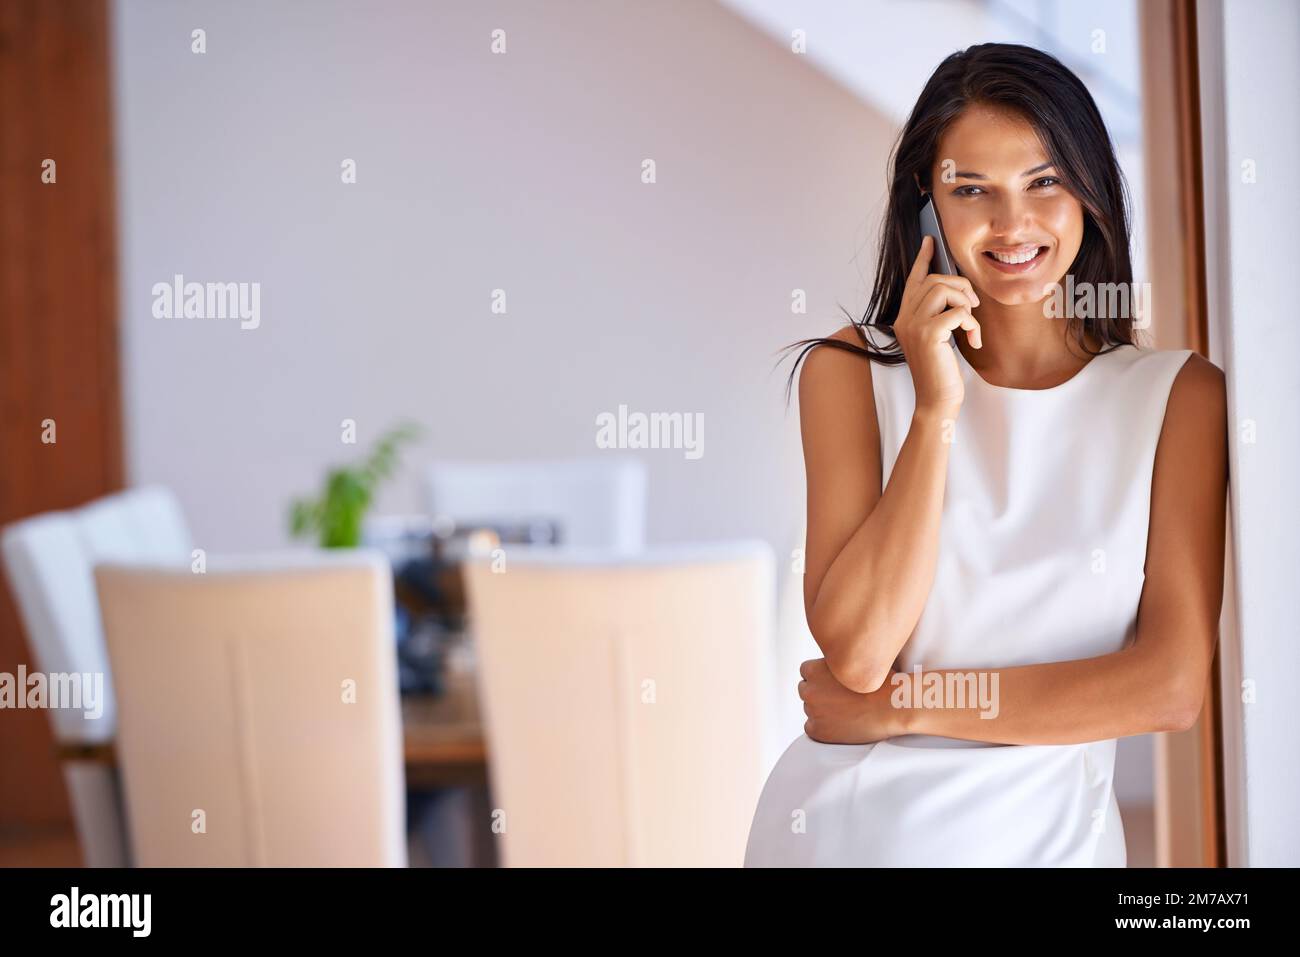 Es ist immer gut, Ihre Stimme zu hören ... eine attraktive junge Frau, die zu Hause auf ihrem Handy spricht. Stockfoto